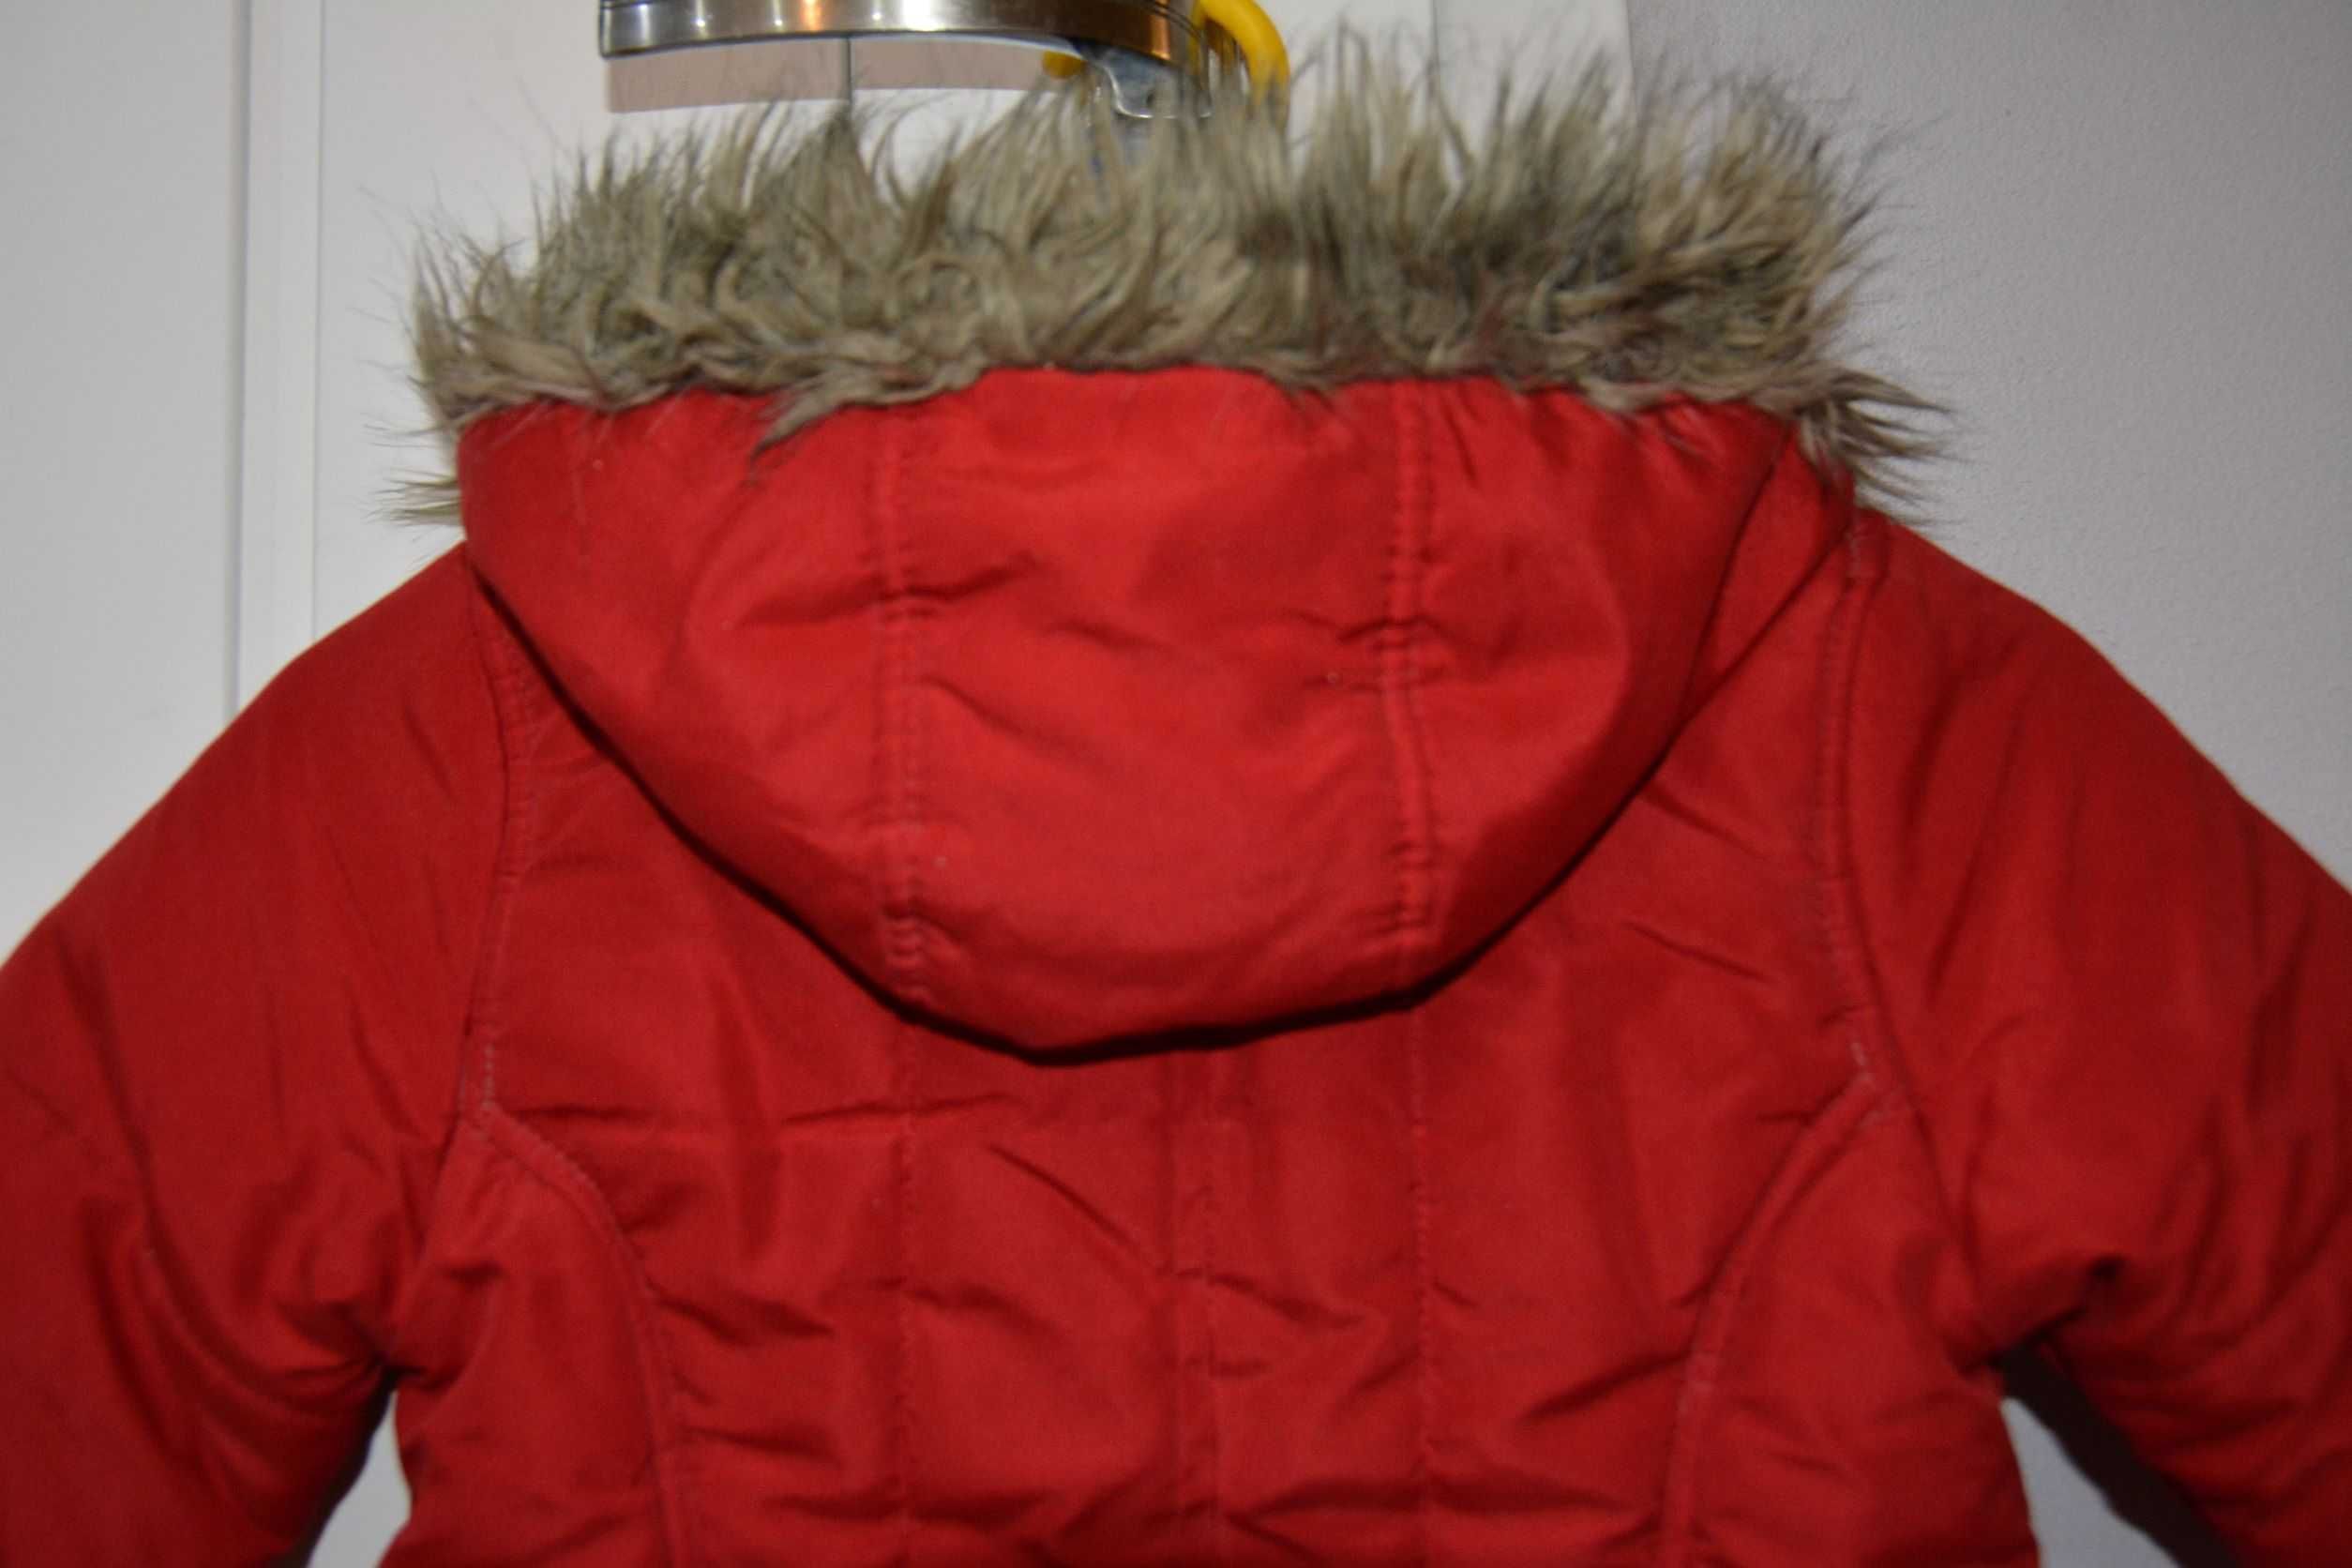 płaszczyk, kurtka zimowa dziewczynka r.98 Topolino